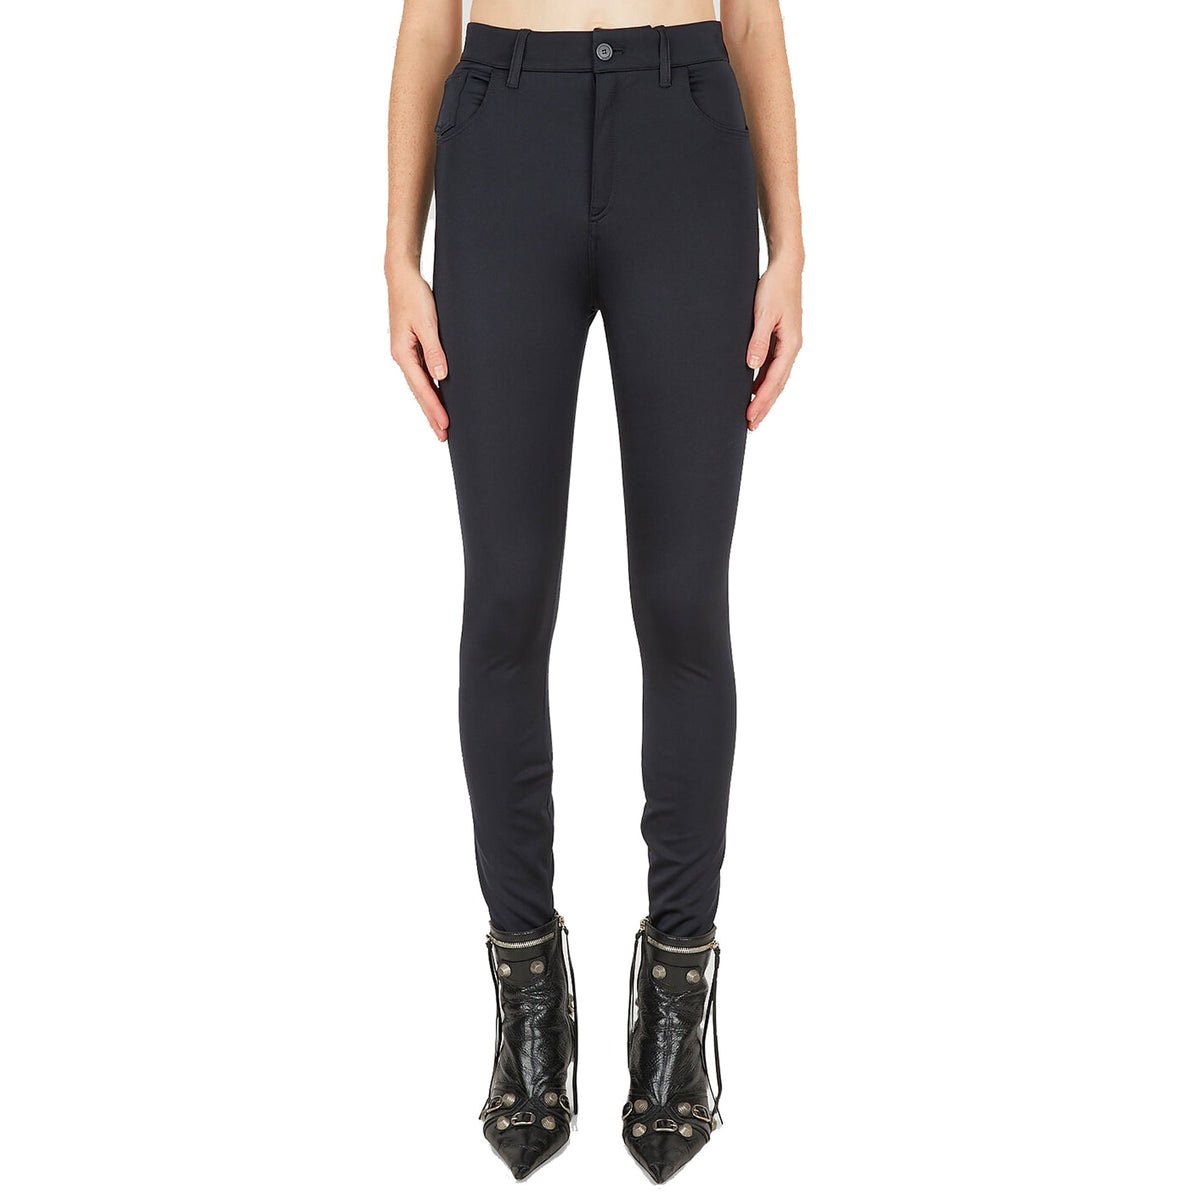 Balenciaga // Black High Waisted Zip Pocket Logo Legging – VSP